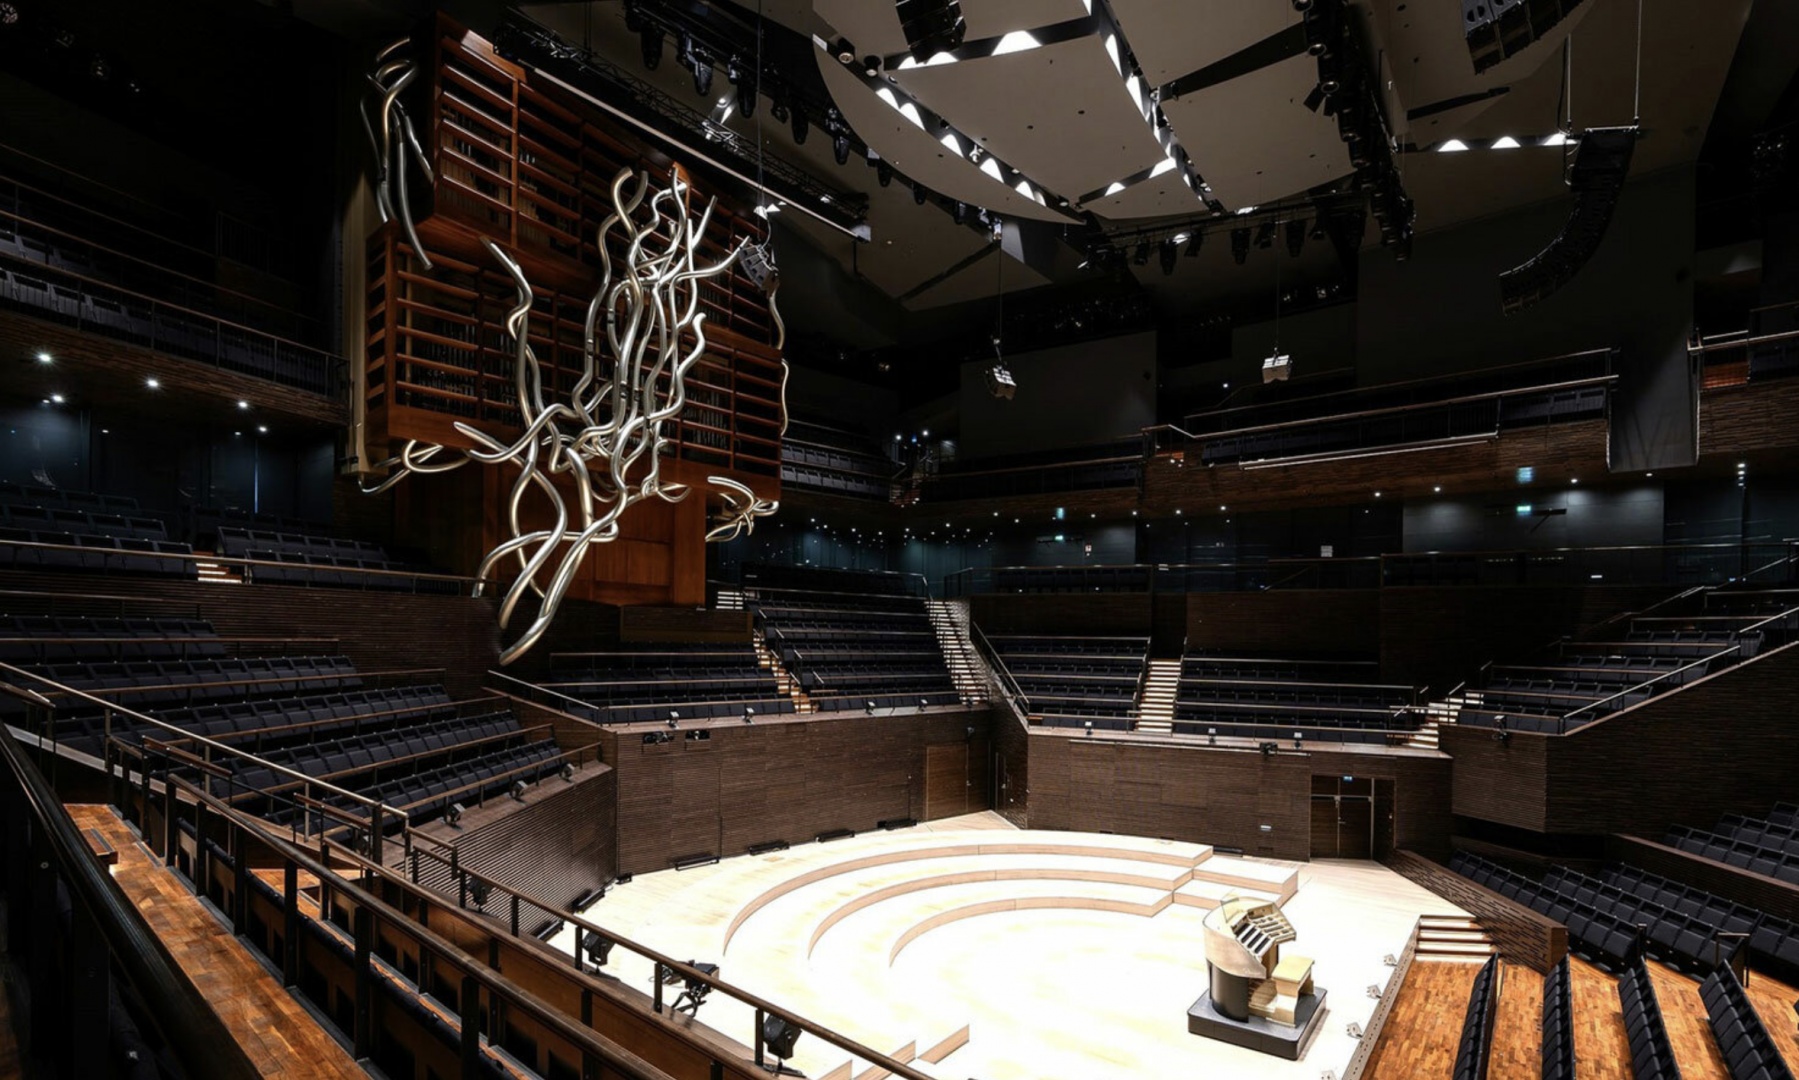 Трубы нового органа в Хельсинкском Доме музыки напечатаны на 3D-принтере